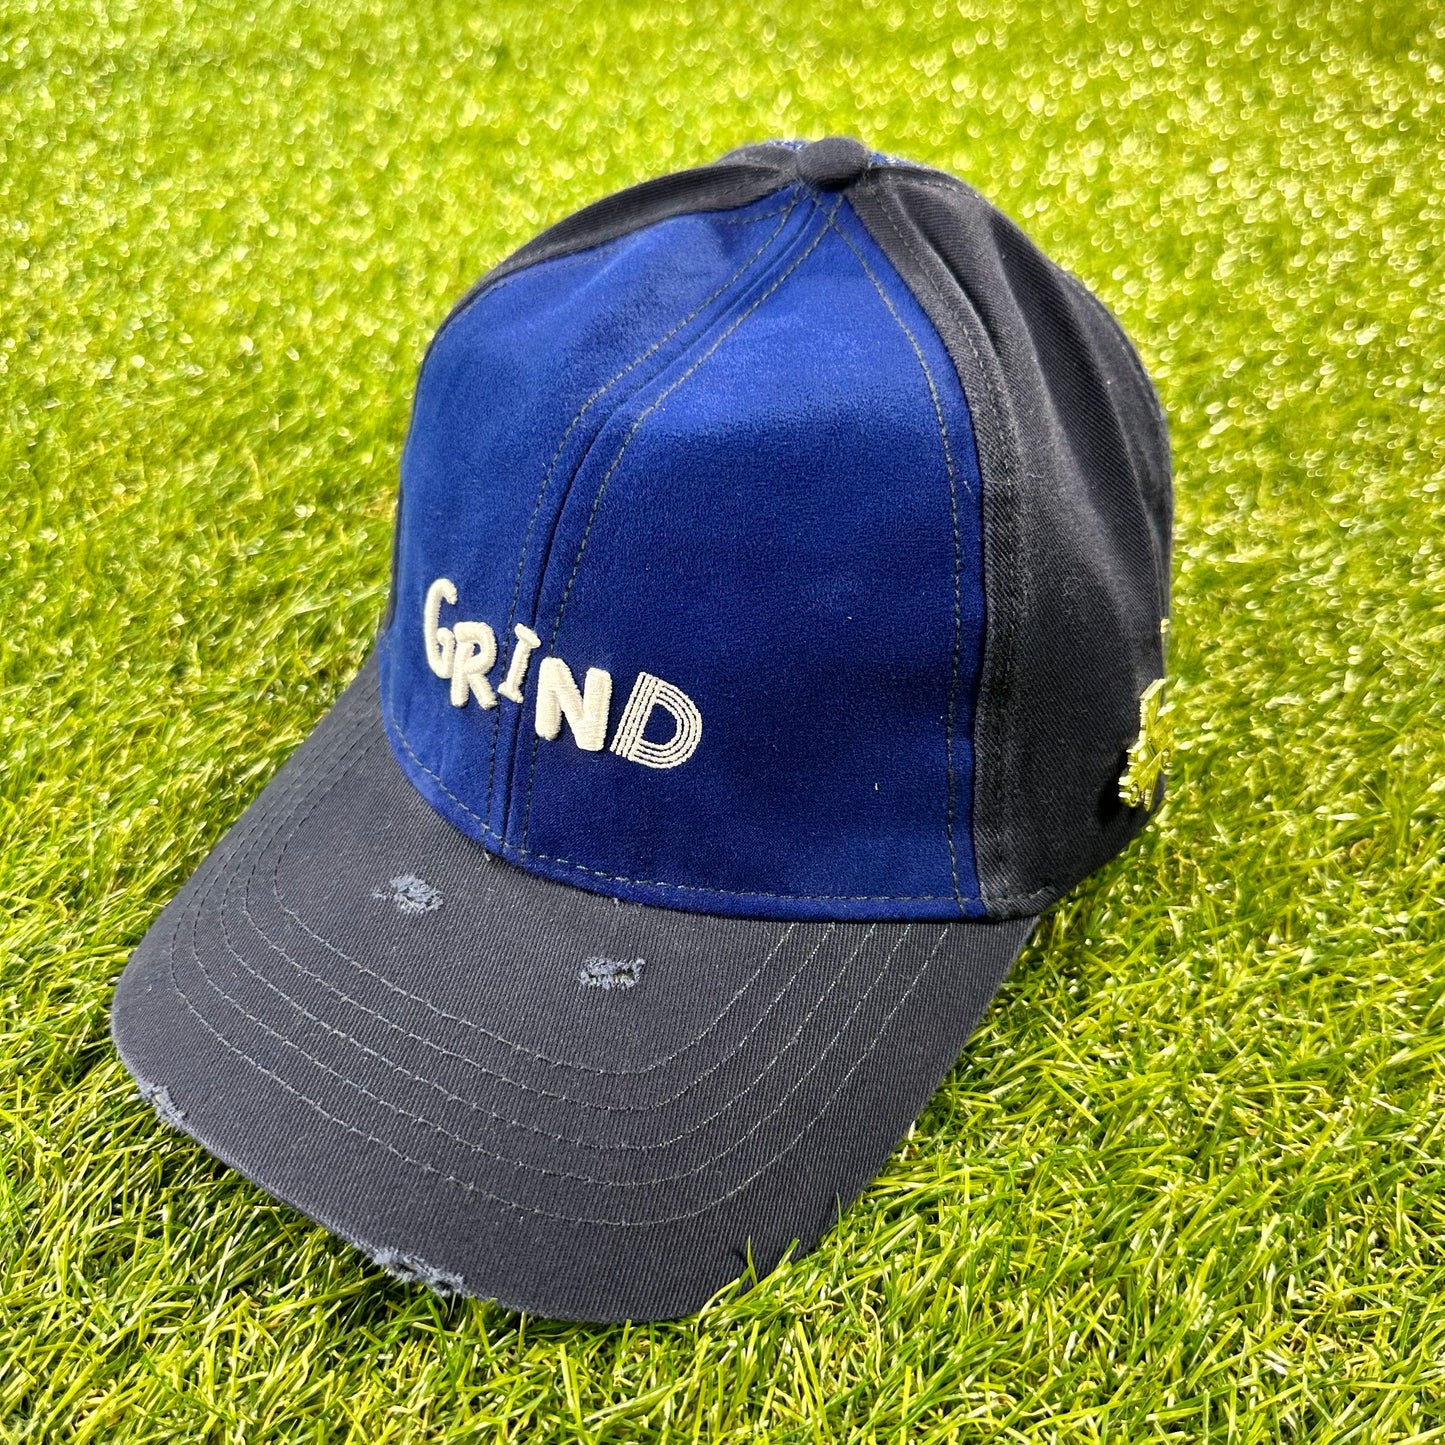 Grind Truck Dad Hat (Navy)